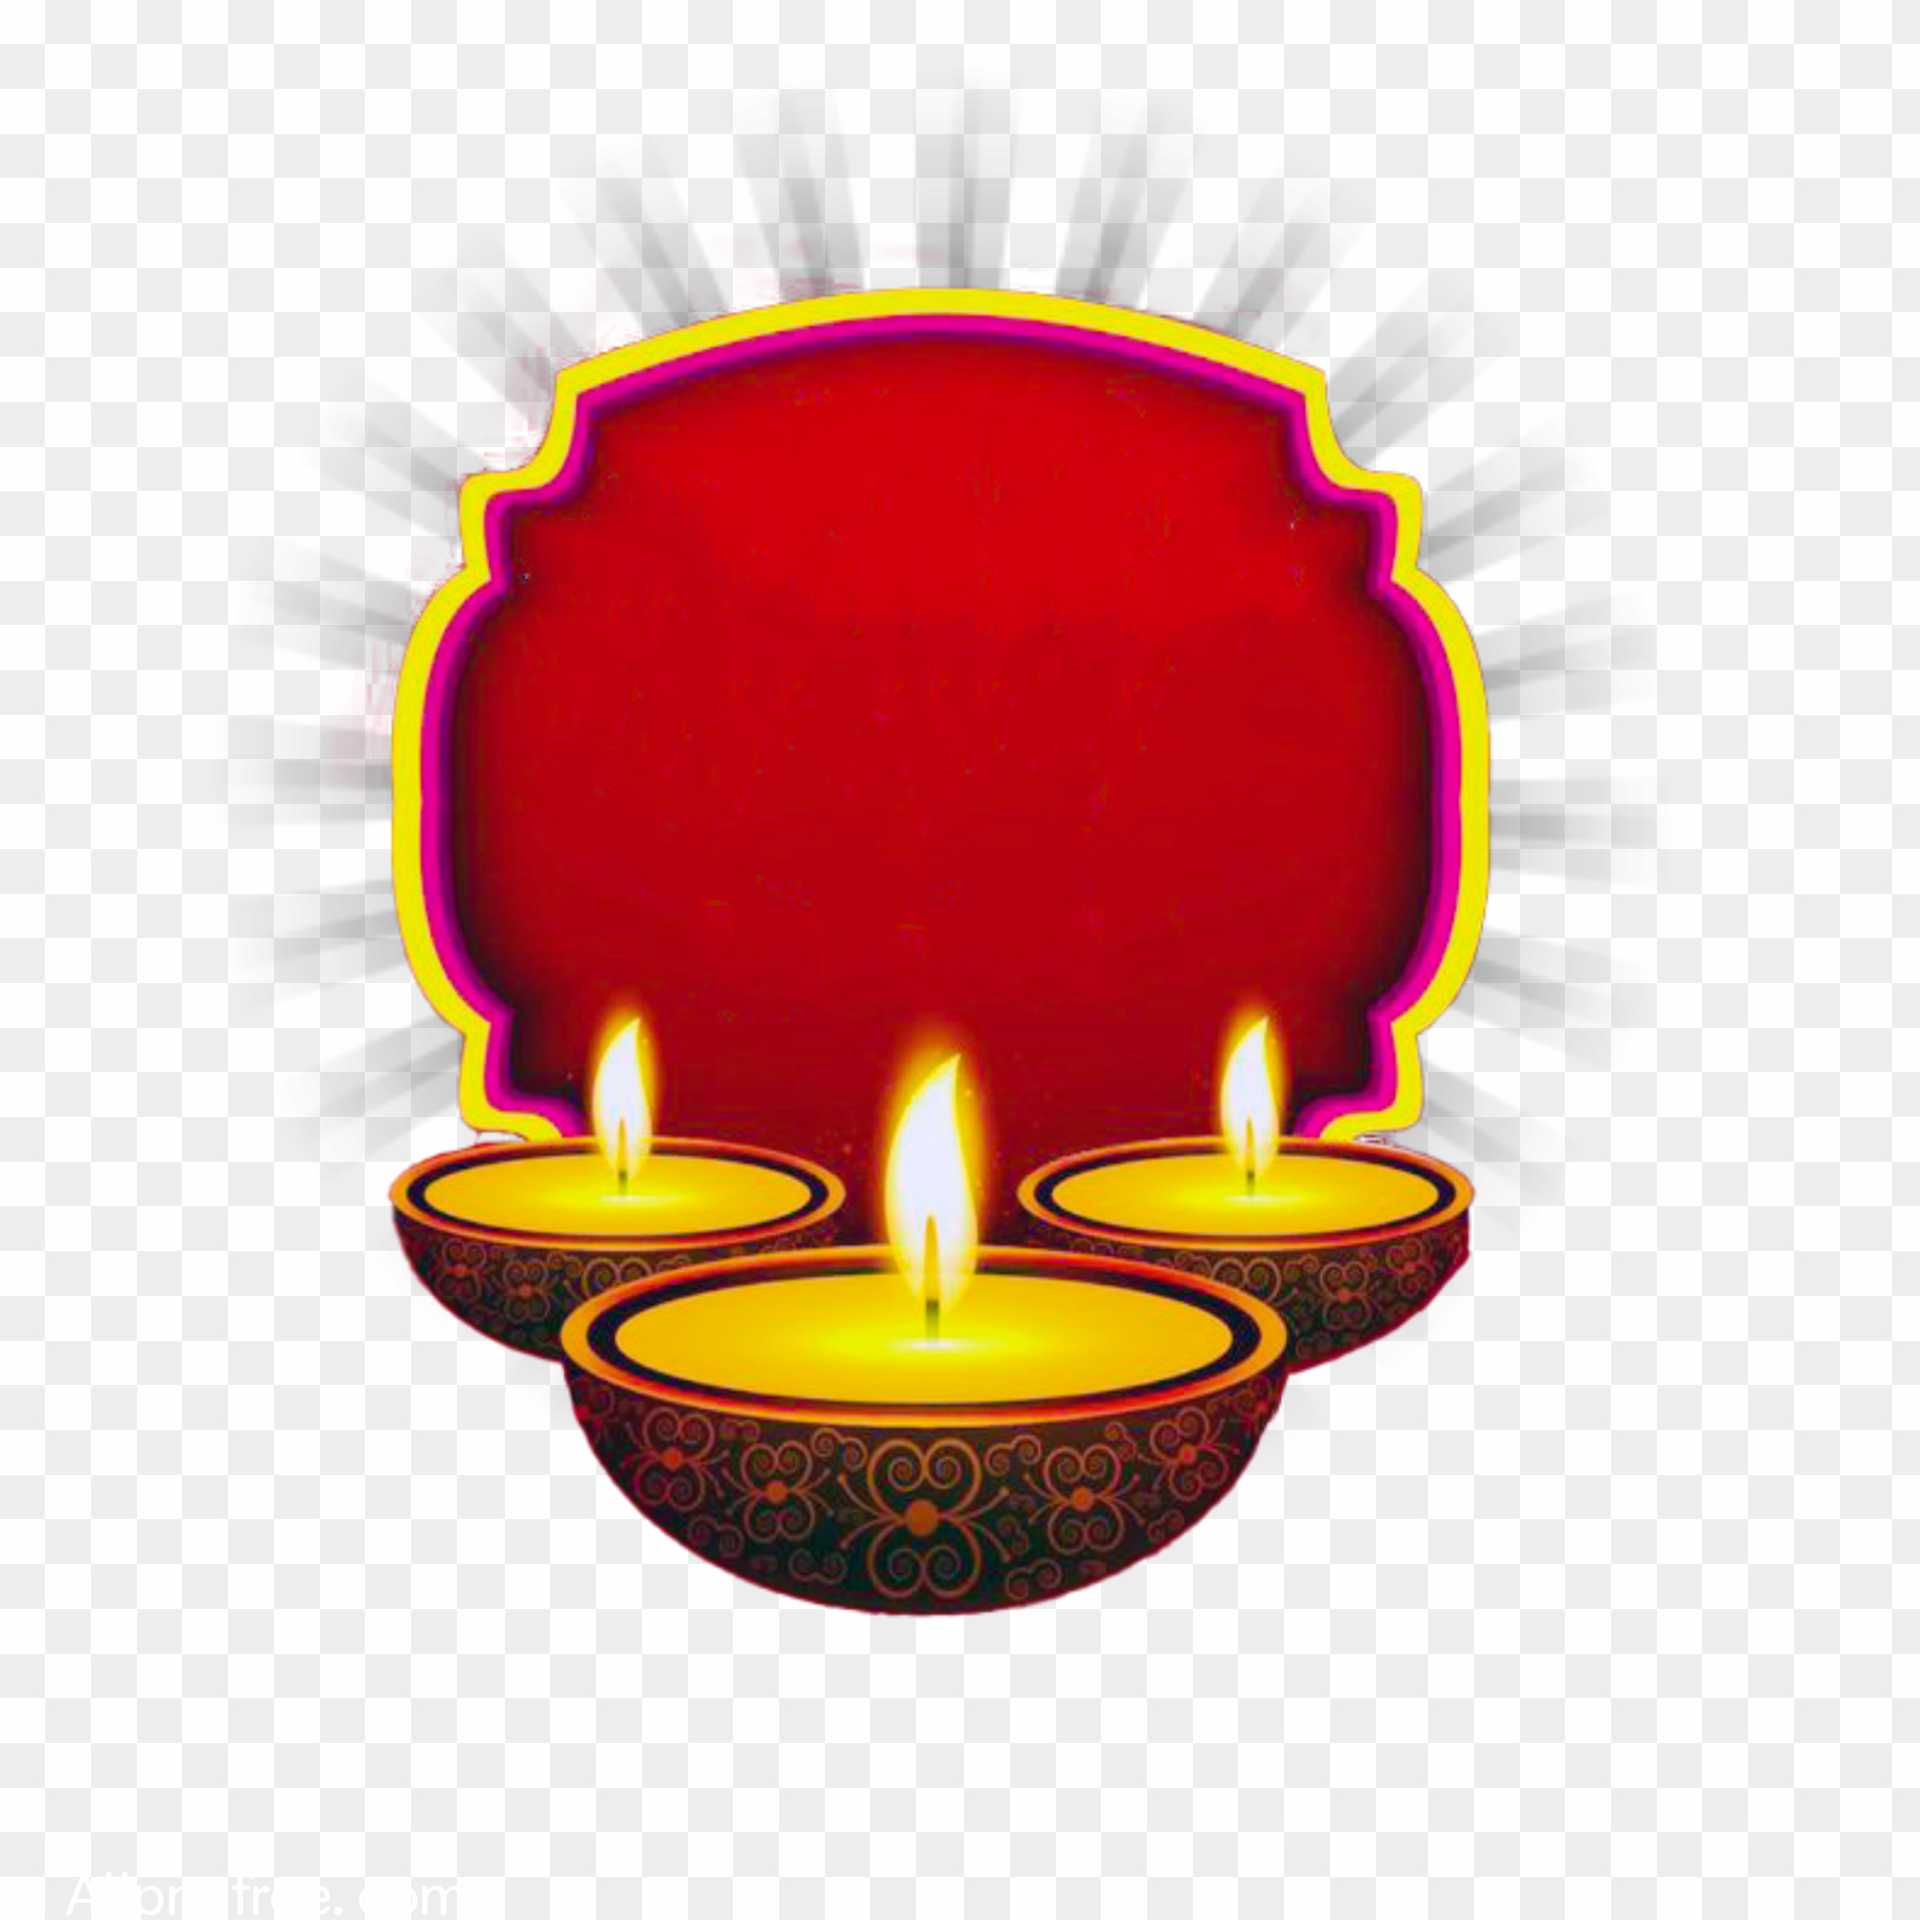 Diwali background shape PNG transformer images